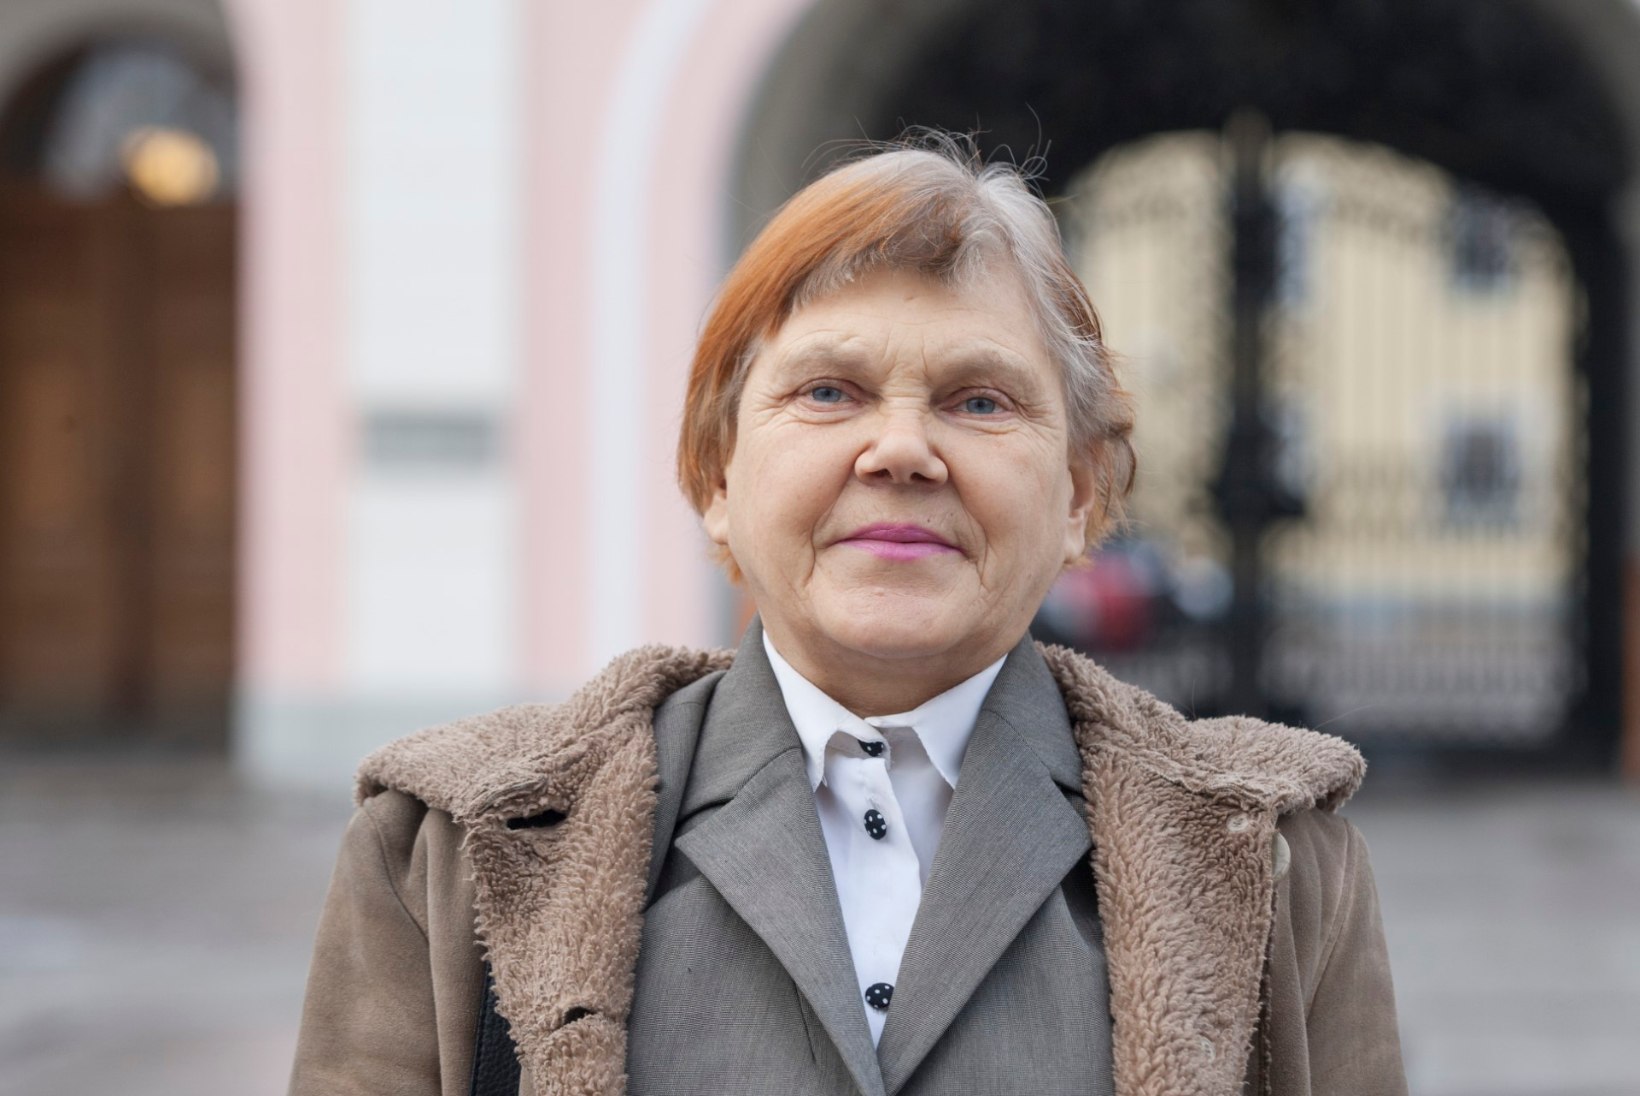 ÕHTULEHE VIDEO | Üksikkandidaat Svetlana Ivnitskaja: sooviti, et vähemalt üks kaine peaga inimene oleks riigikogus